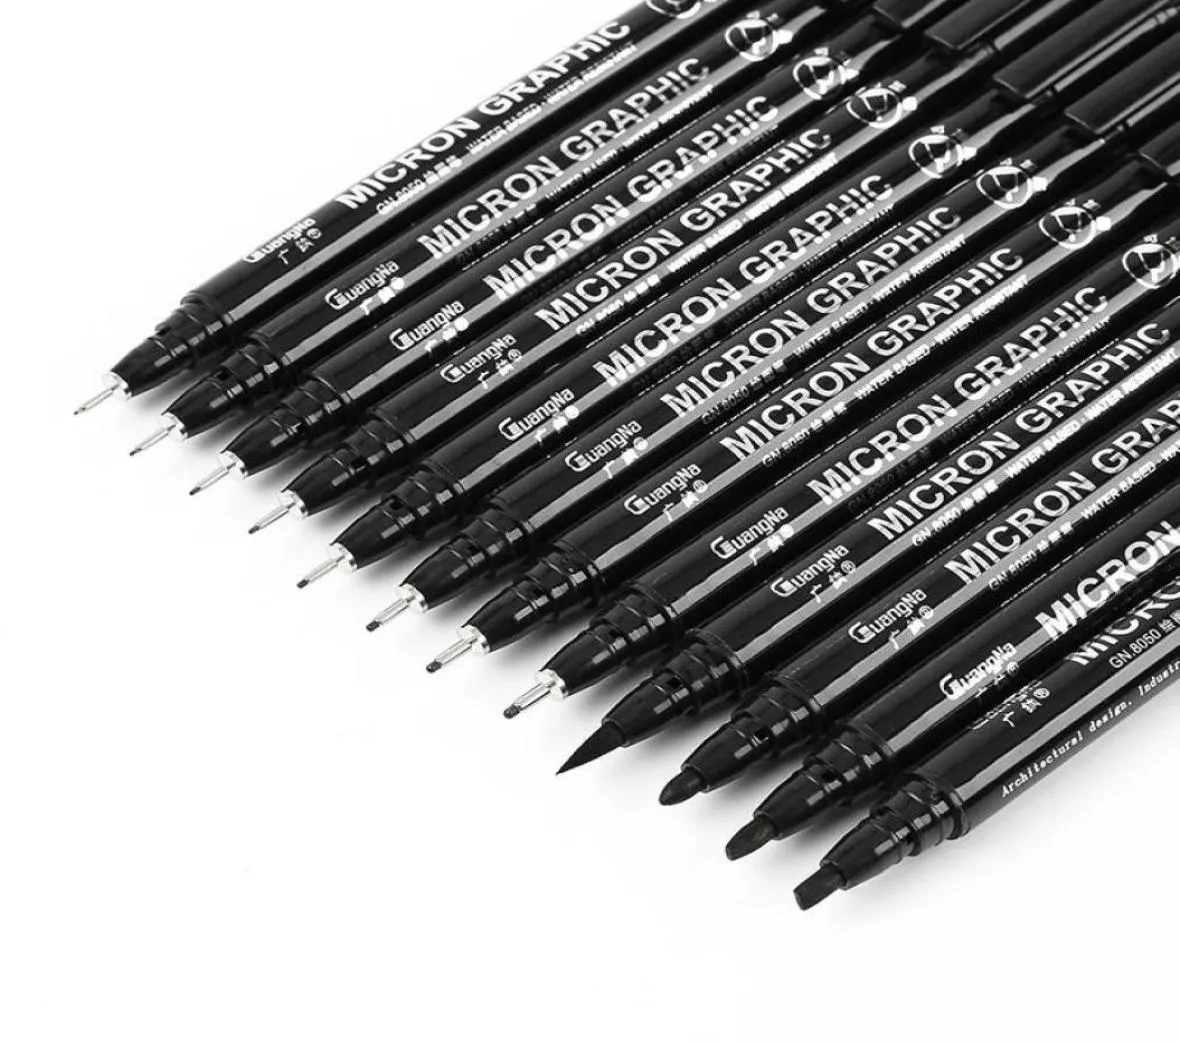 Ручка для рисования Fineliner Ultra Fine Line Art Pen с черными чернилами 005 01 02 03 05 08 Микронный офисный школьный набор для рисования 4204649